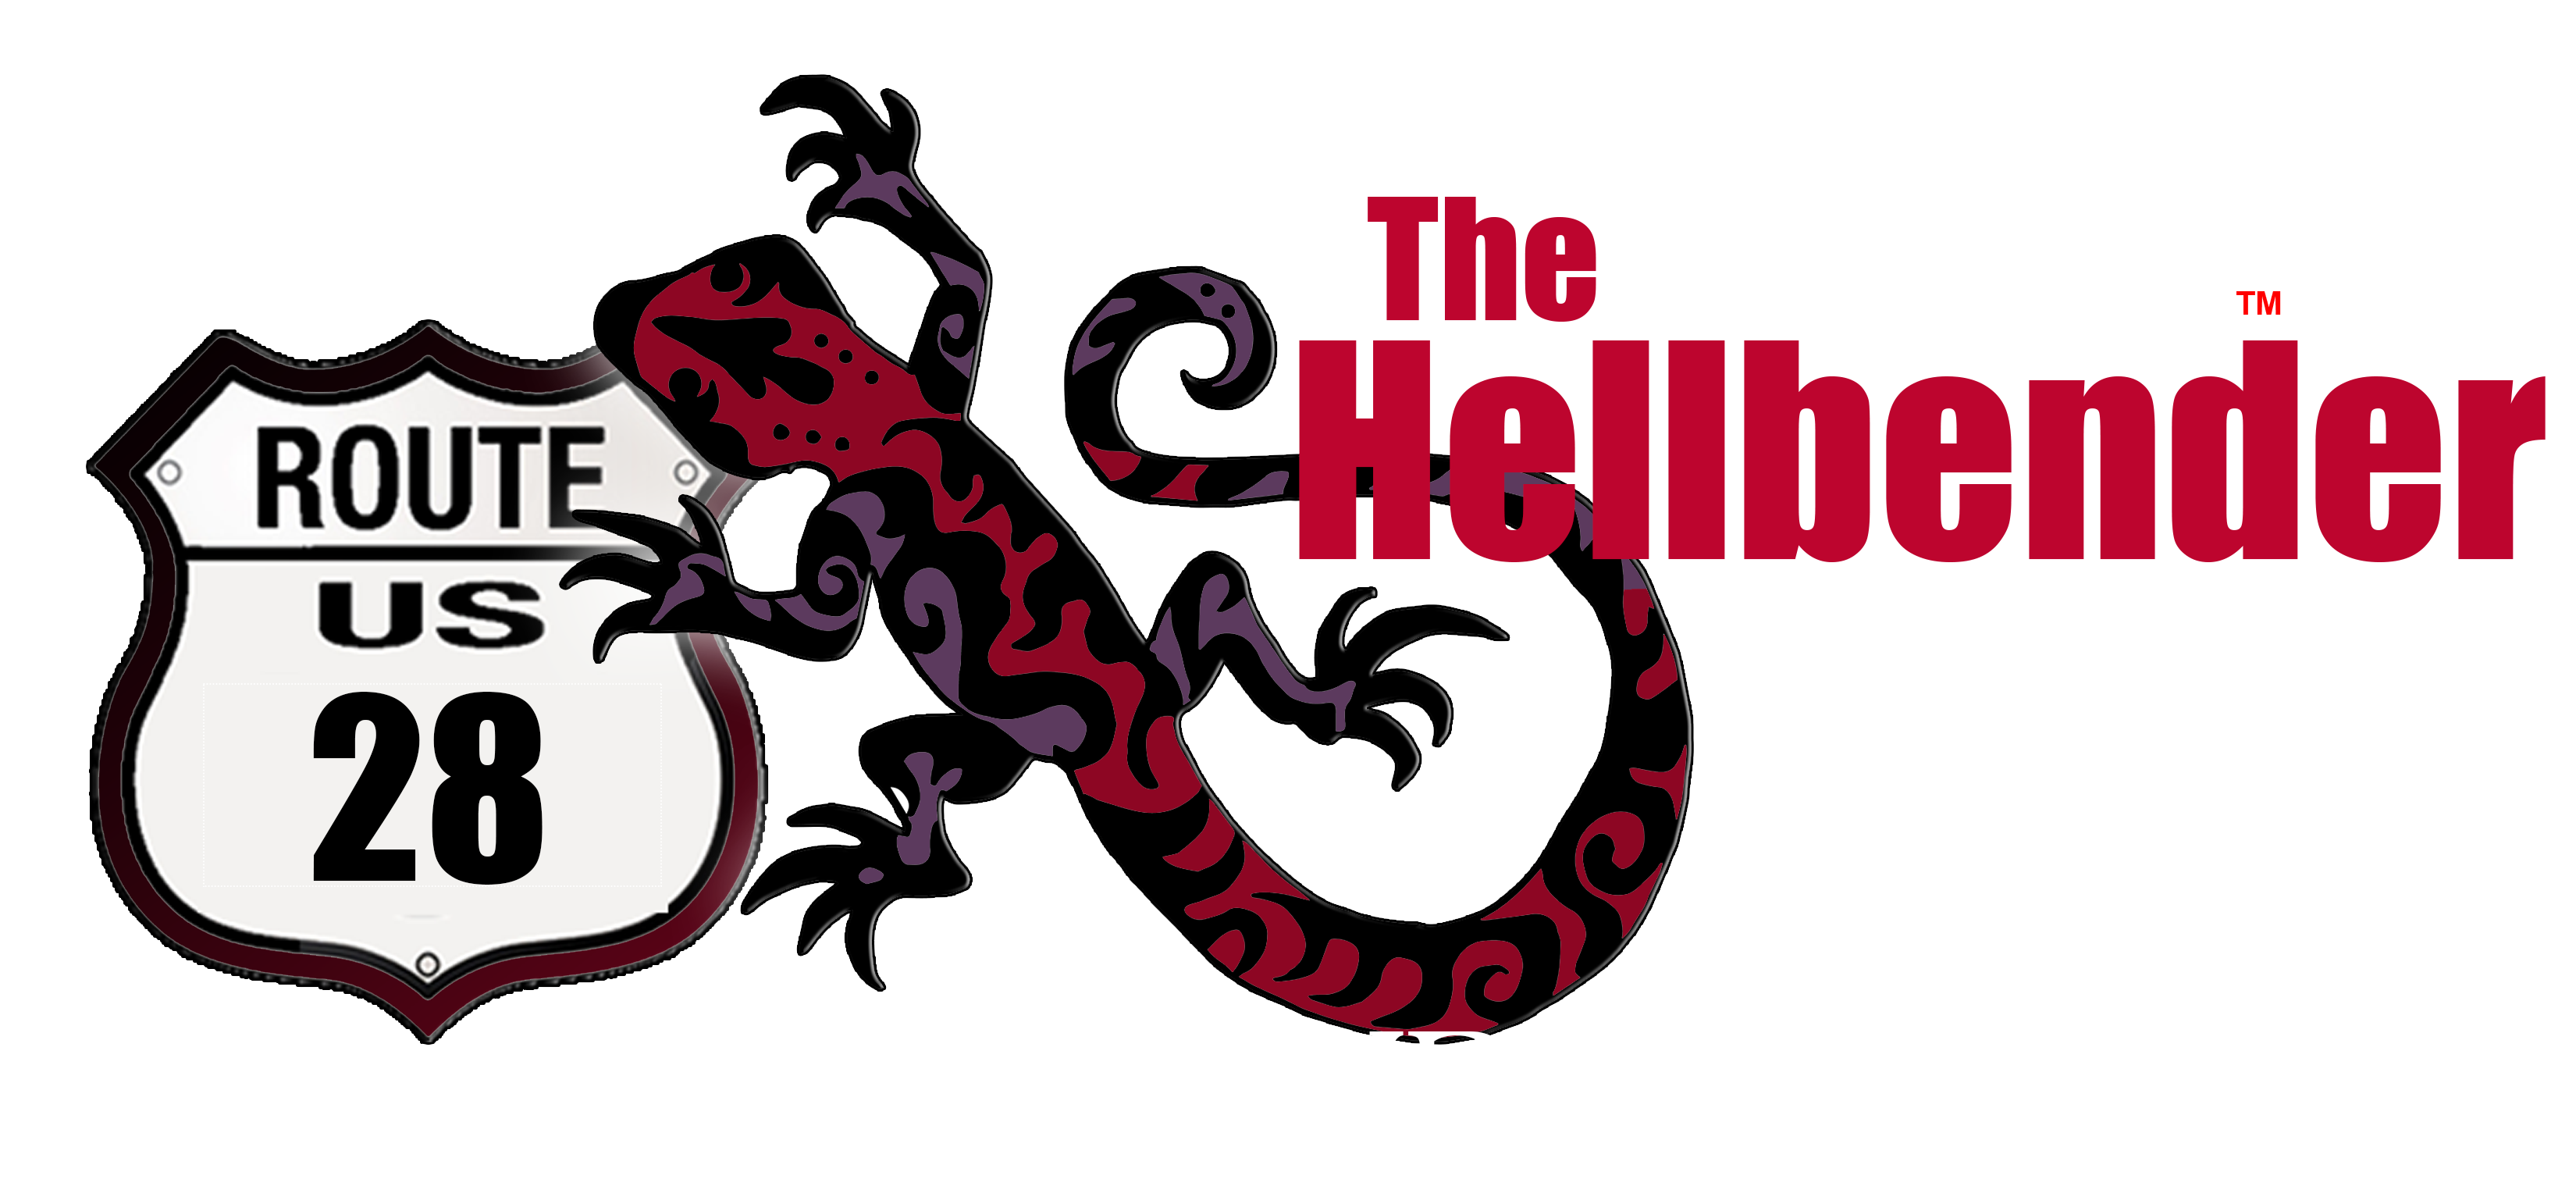 The Hellbender 28 Motorcycle Ride